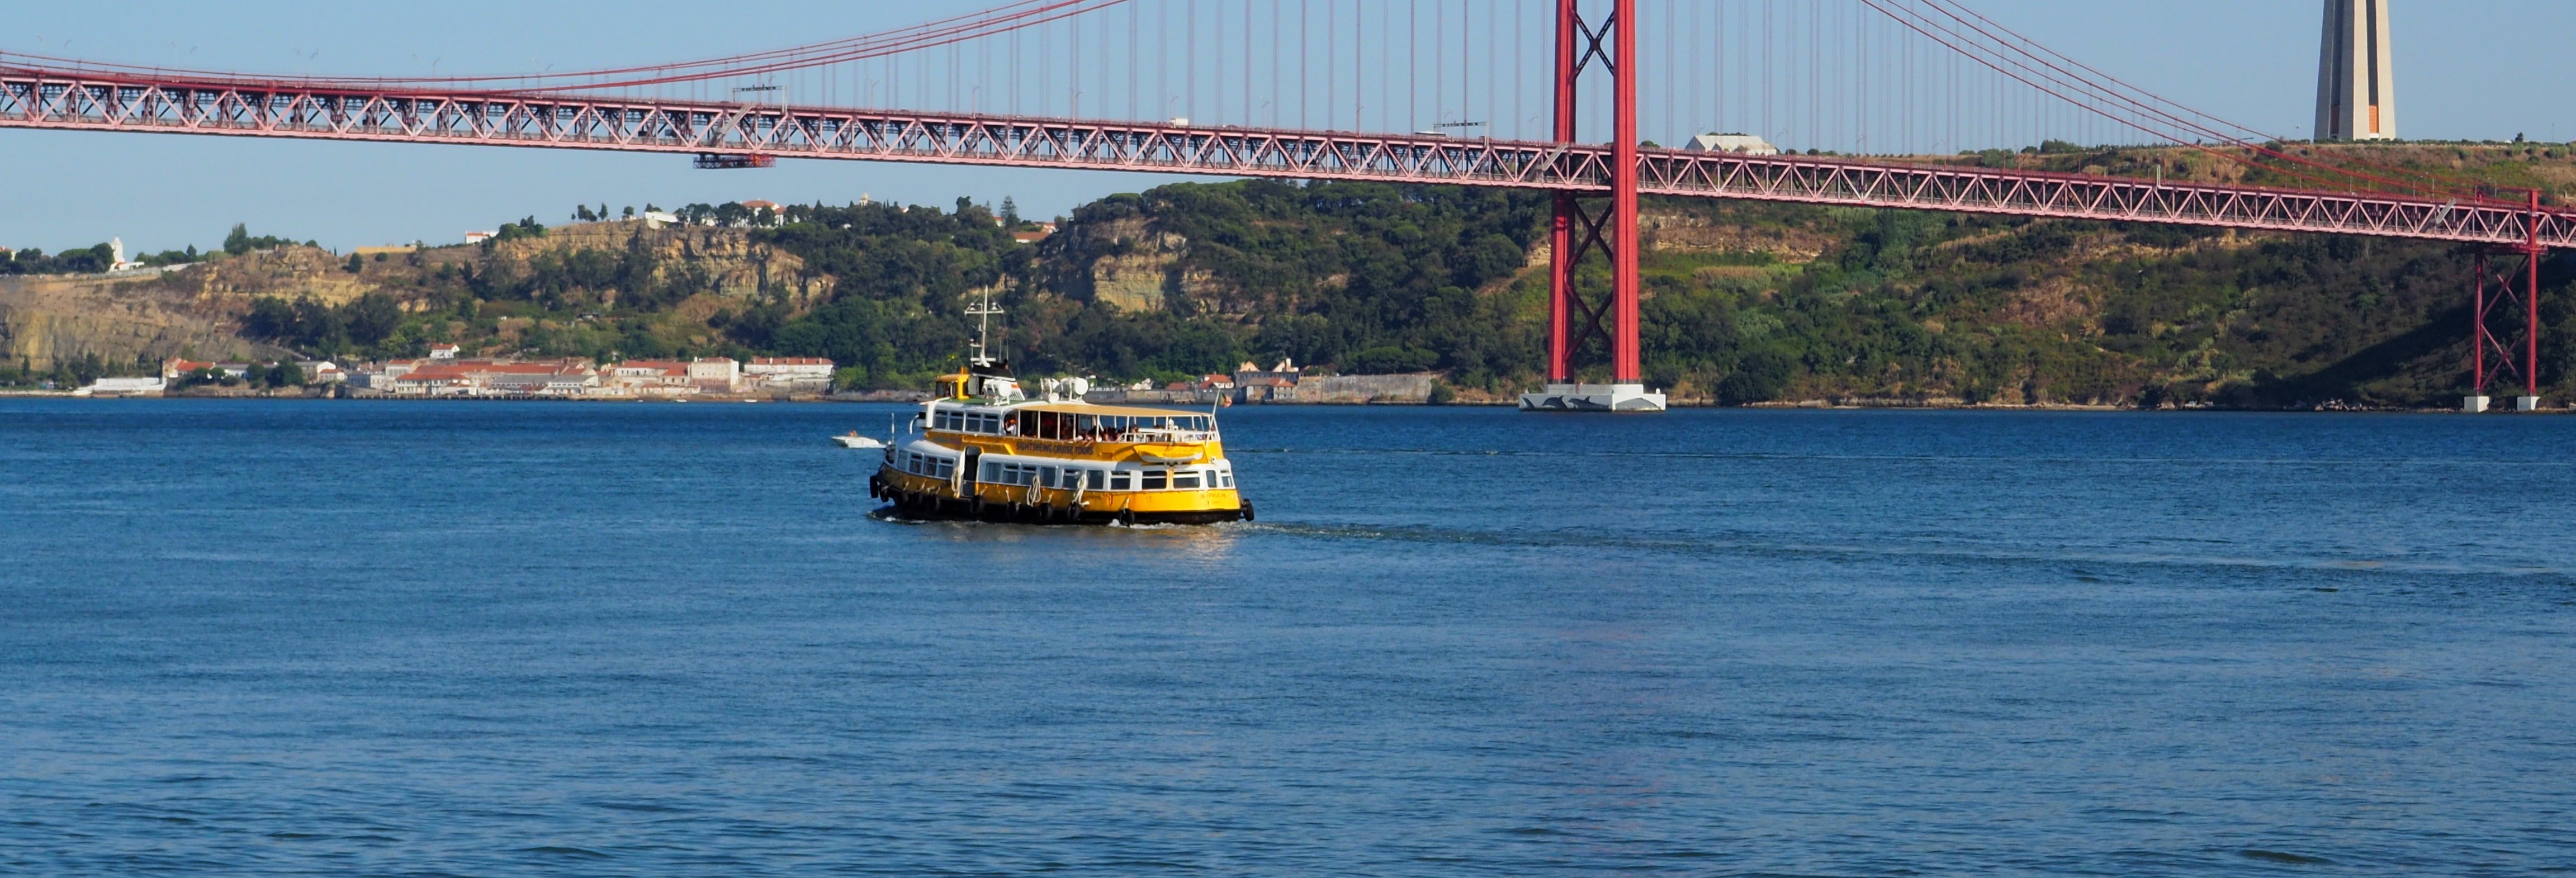 Barco turístico de Lisboa